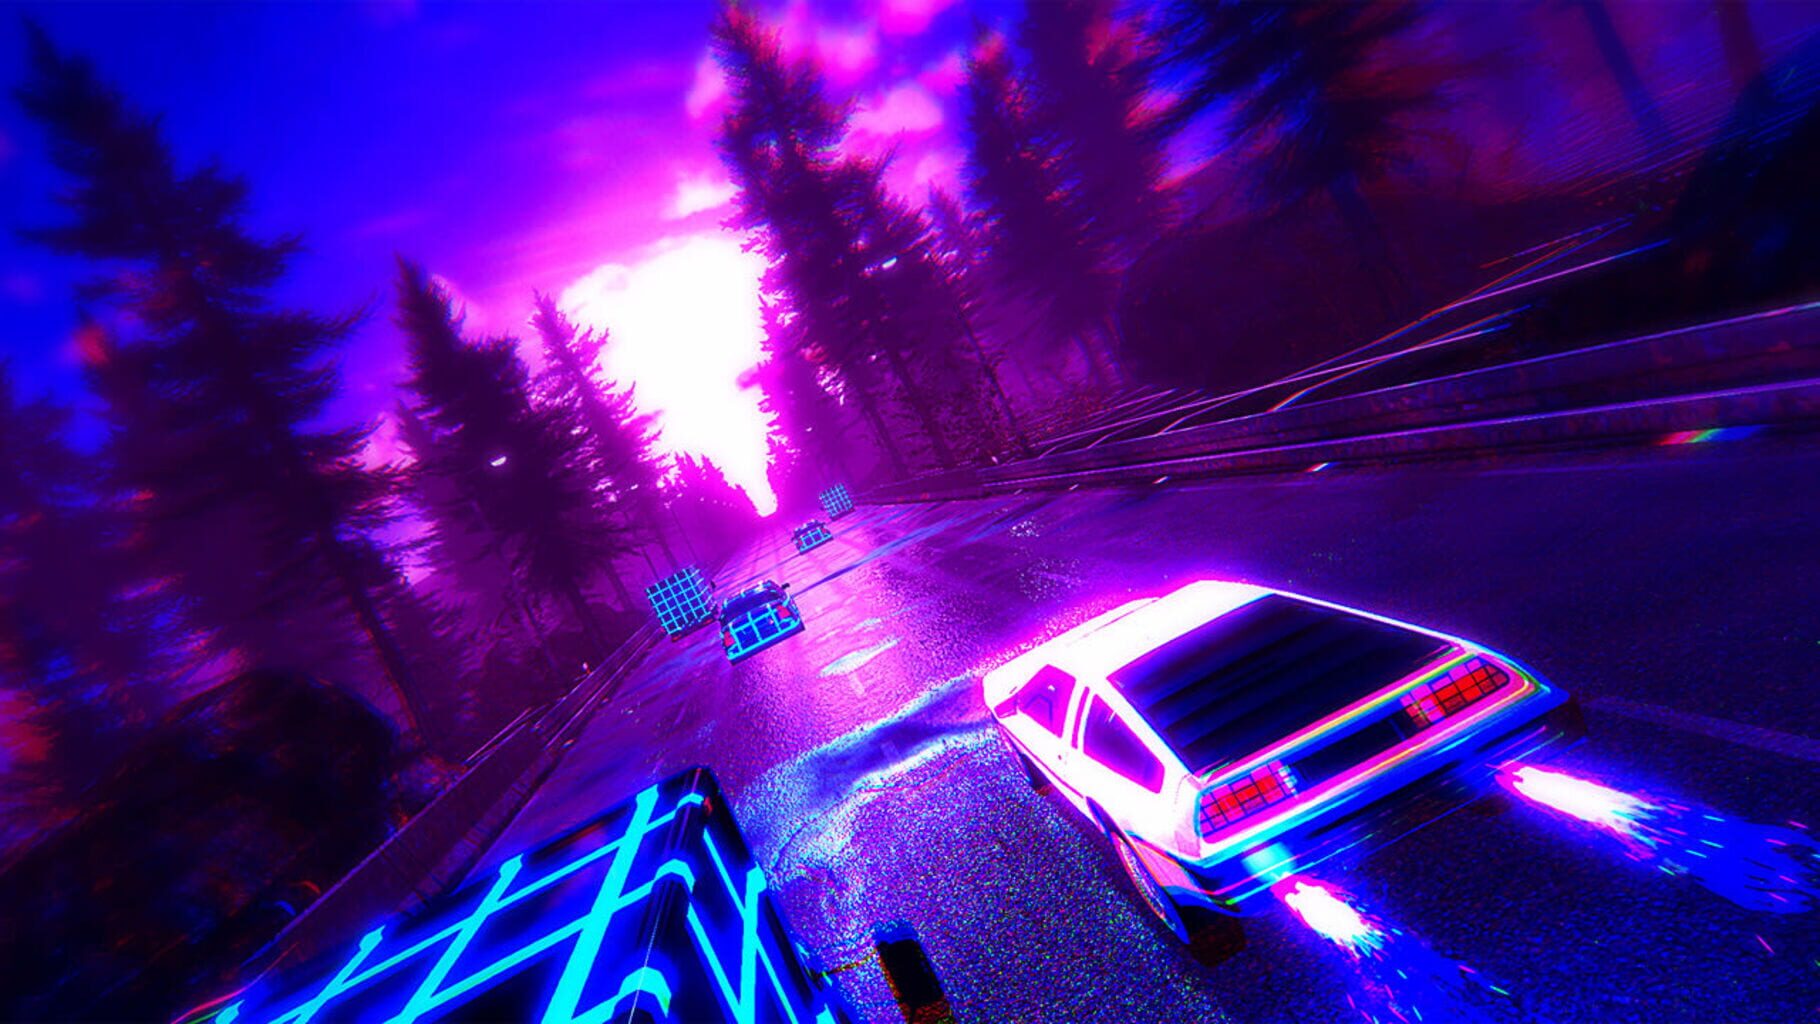 Highway Haste screenshot